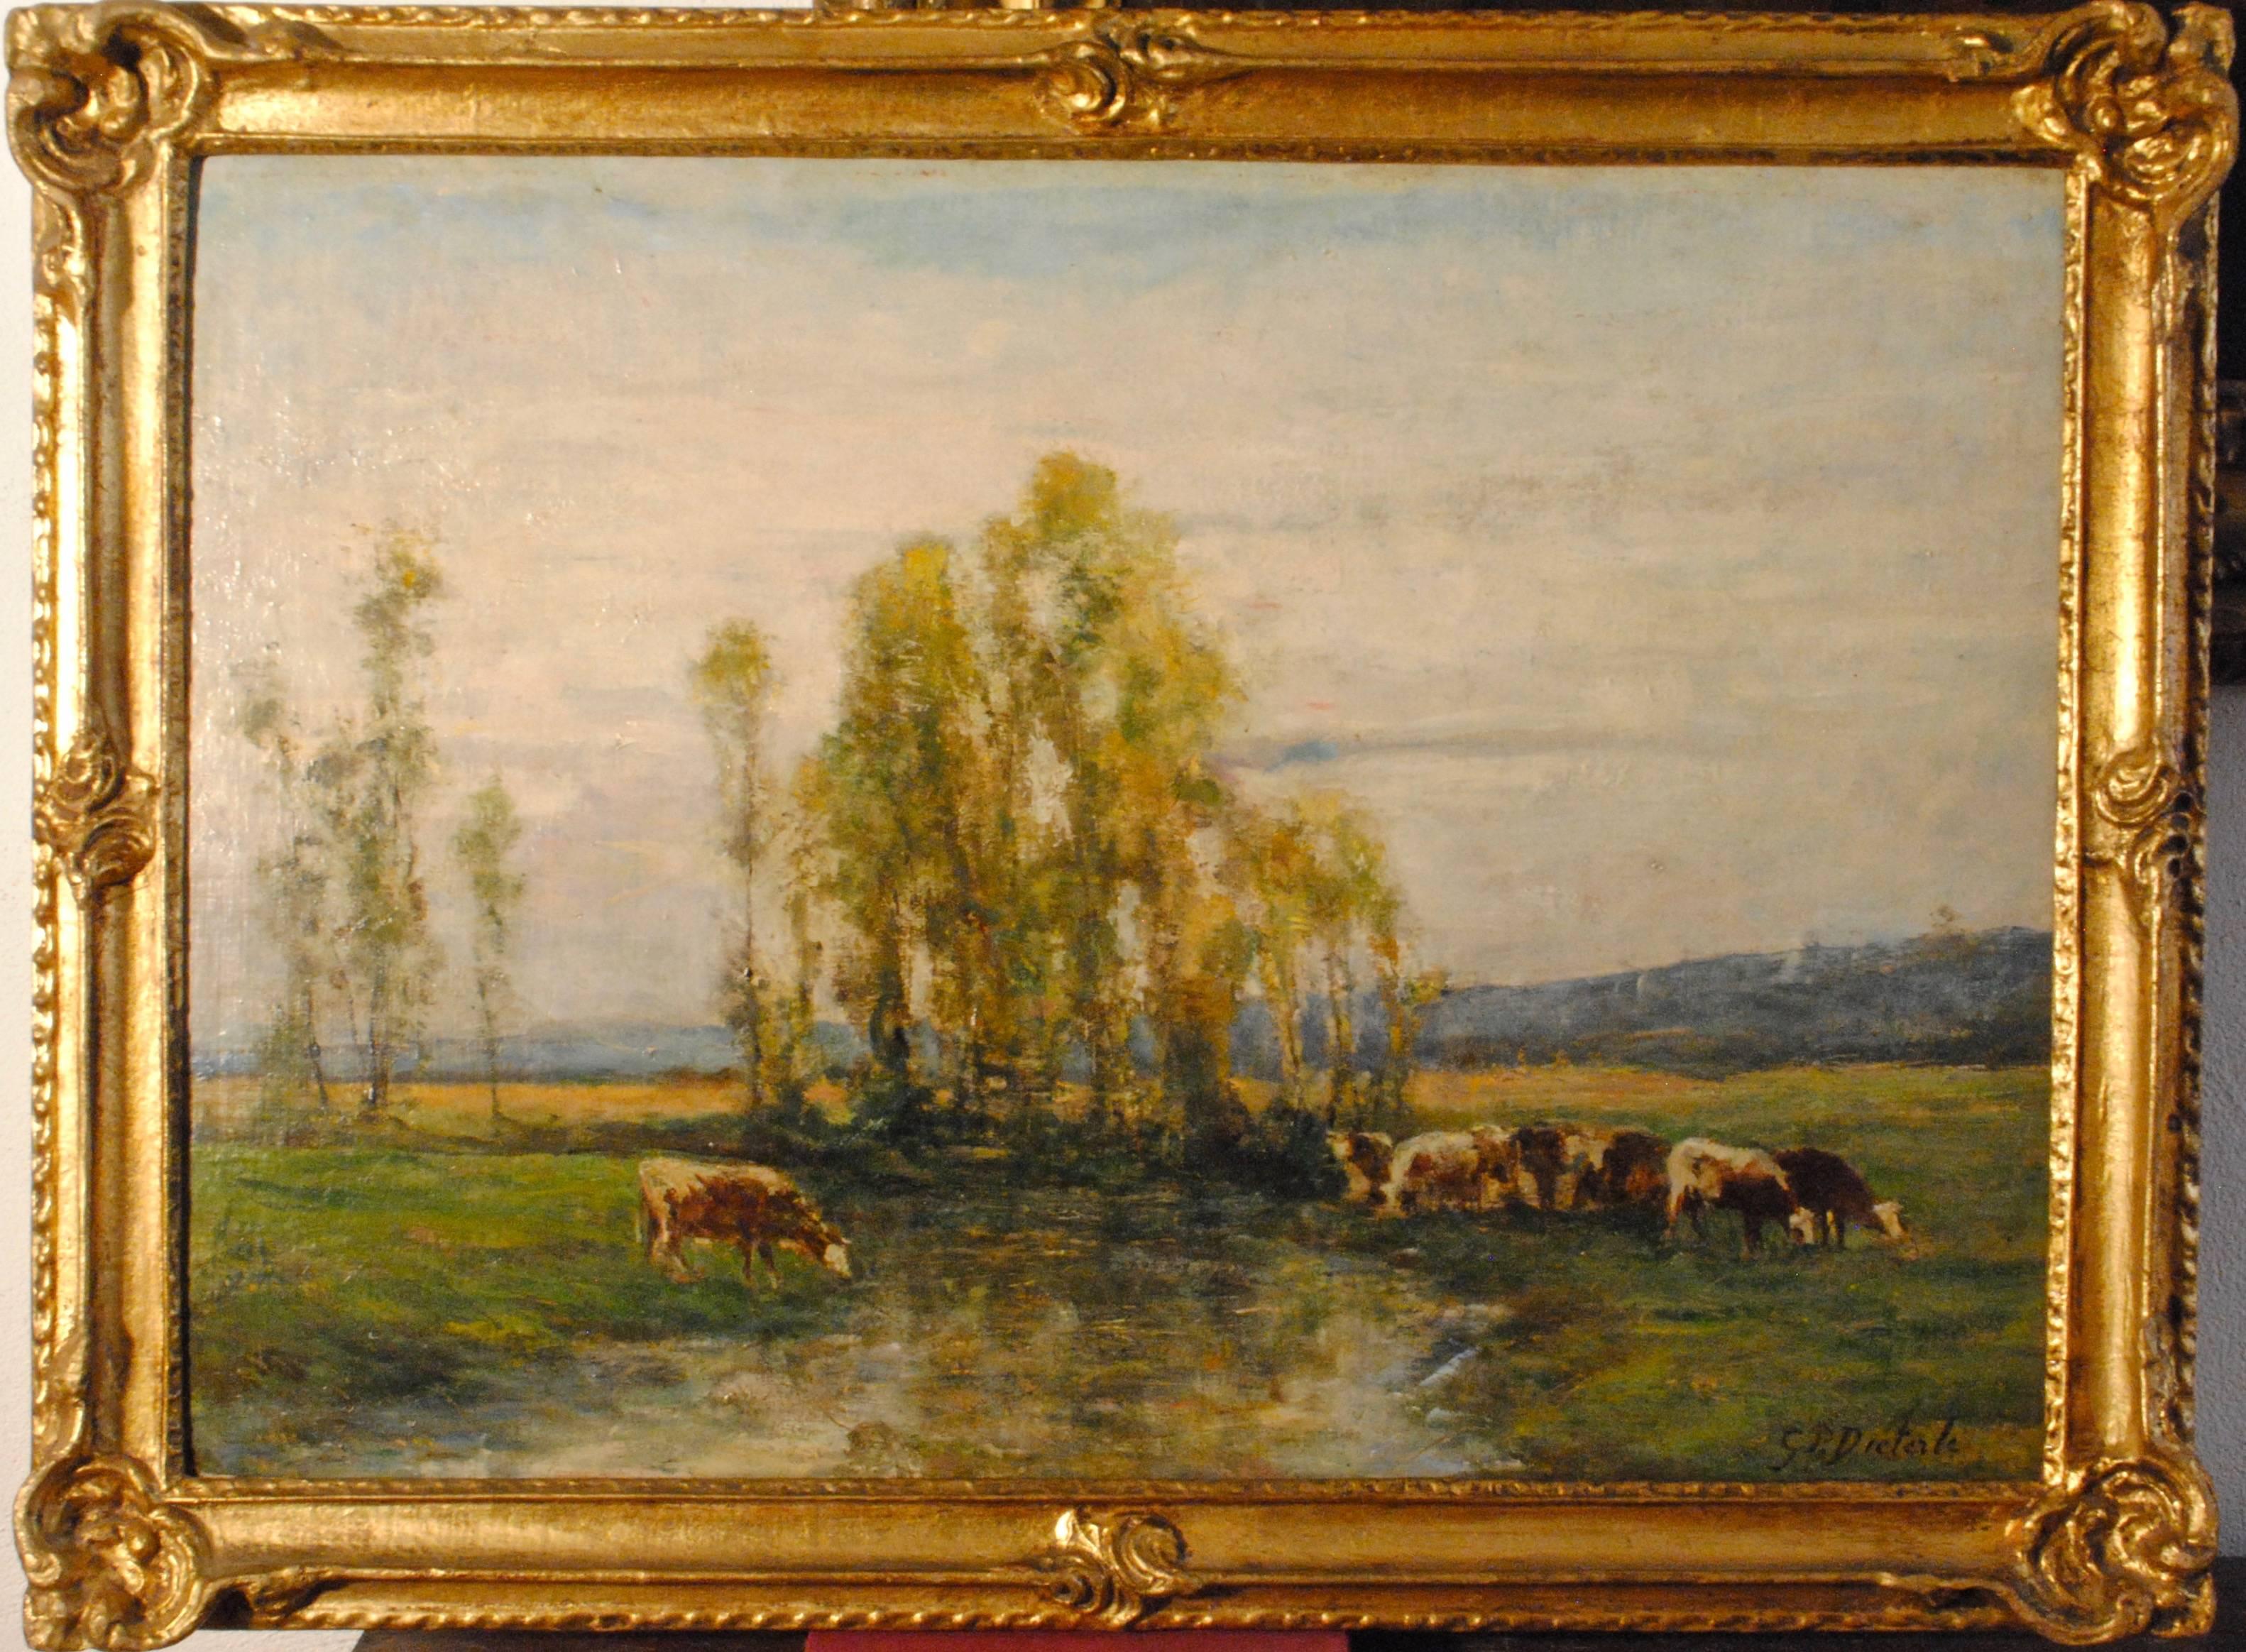 Huit vaches au pâturage par un ruisseau - (Eight cows on pasture by a stream) - Painting by Pierre Georges Dieterle